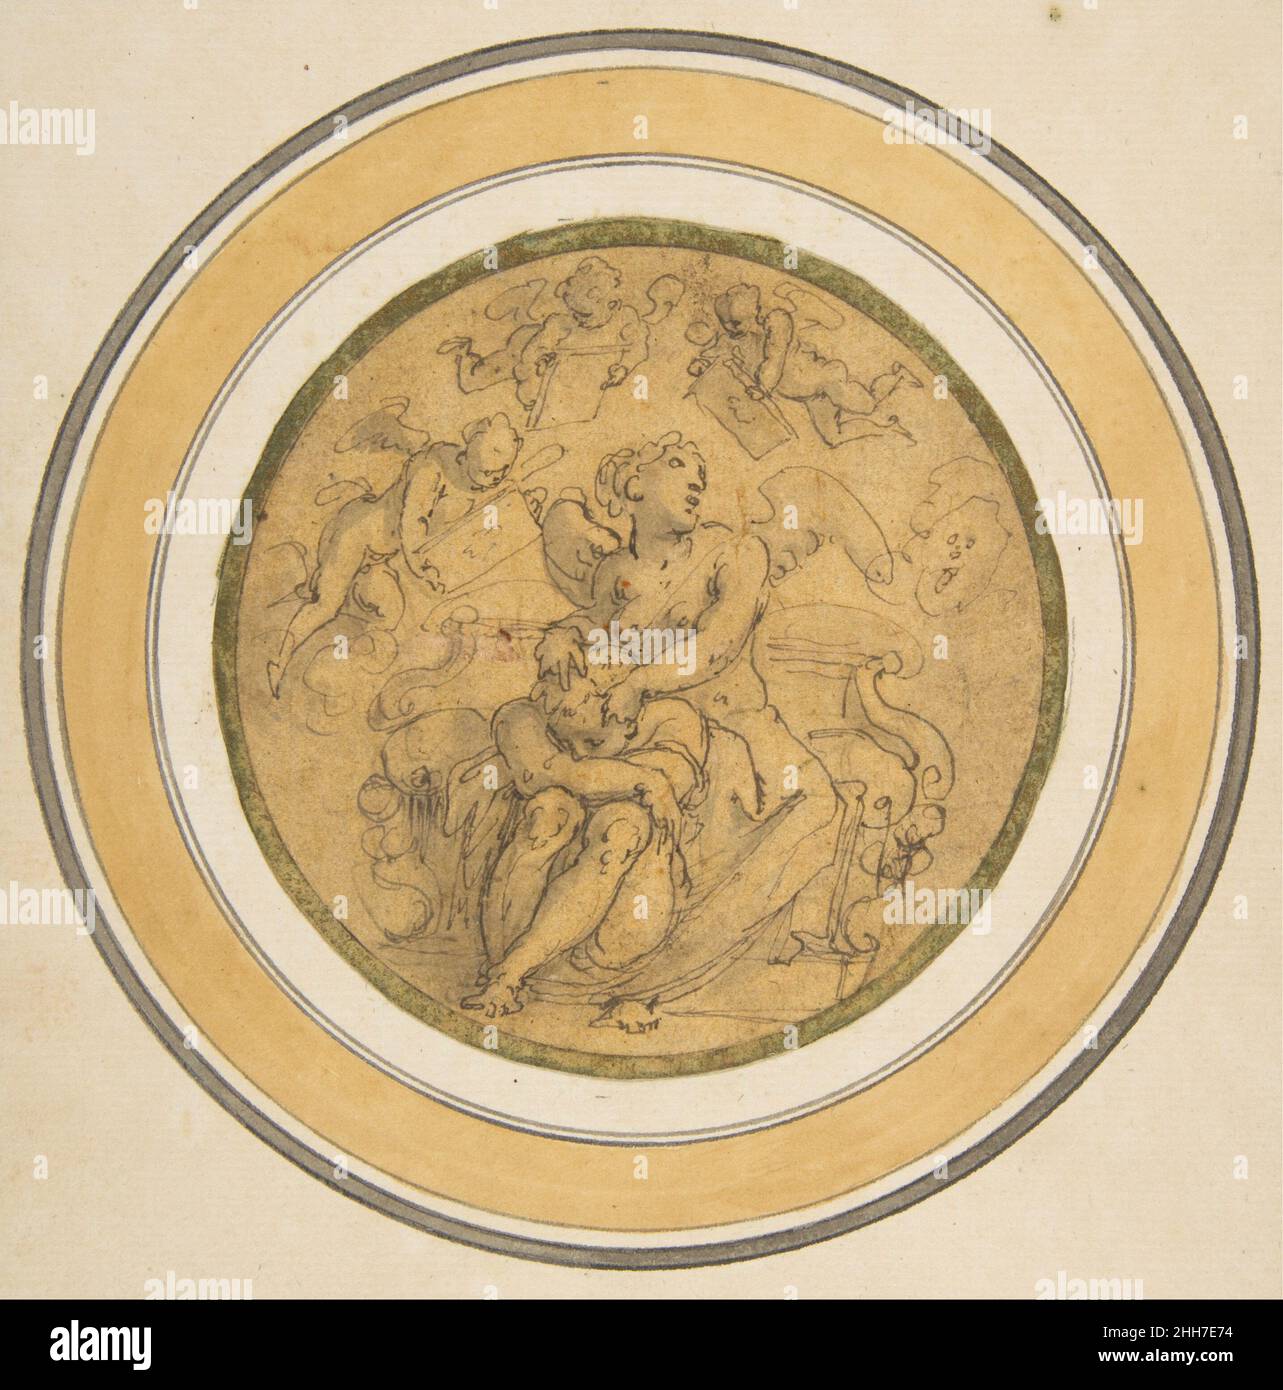 Allégorie du sommeil ca.1570 Giorgio Vasari Italien les deux croquis rapides avec l'allégorie de l'oubli (suivant no67.95.3) et l'allégorie du sommeil (suivant n°67.95.4) ont été exécutés en stylo et encre brune par l'artiste et historien de la Renaissance Giorgio Vasari d'une manière rapide et spontanée pour enregistrer ses idées pour un plafond ou une décoration murale.En 1981, Julian Kliemann a fait remarquer que les dessins allégoriques de Vasari au Metropolitan Museum of Art correspondent à deux sections d'une décoration de plafond d'une chambre (éventuellement pour Francesco I de' Medici) planifiée par Vincenzo Borghini dans un texte da Banque D'Images